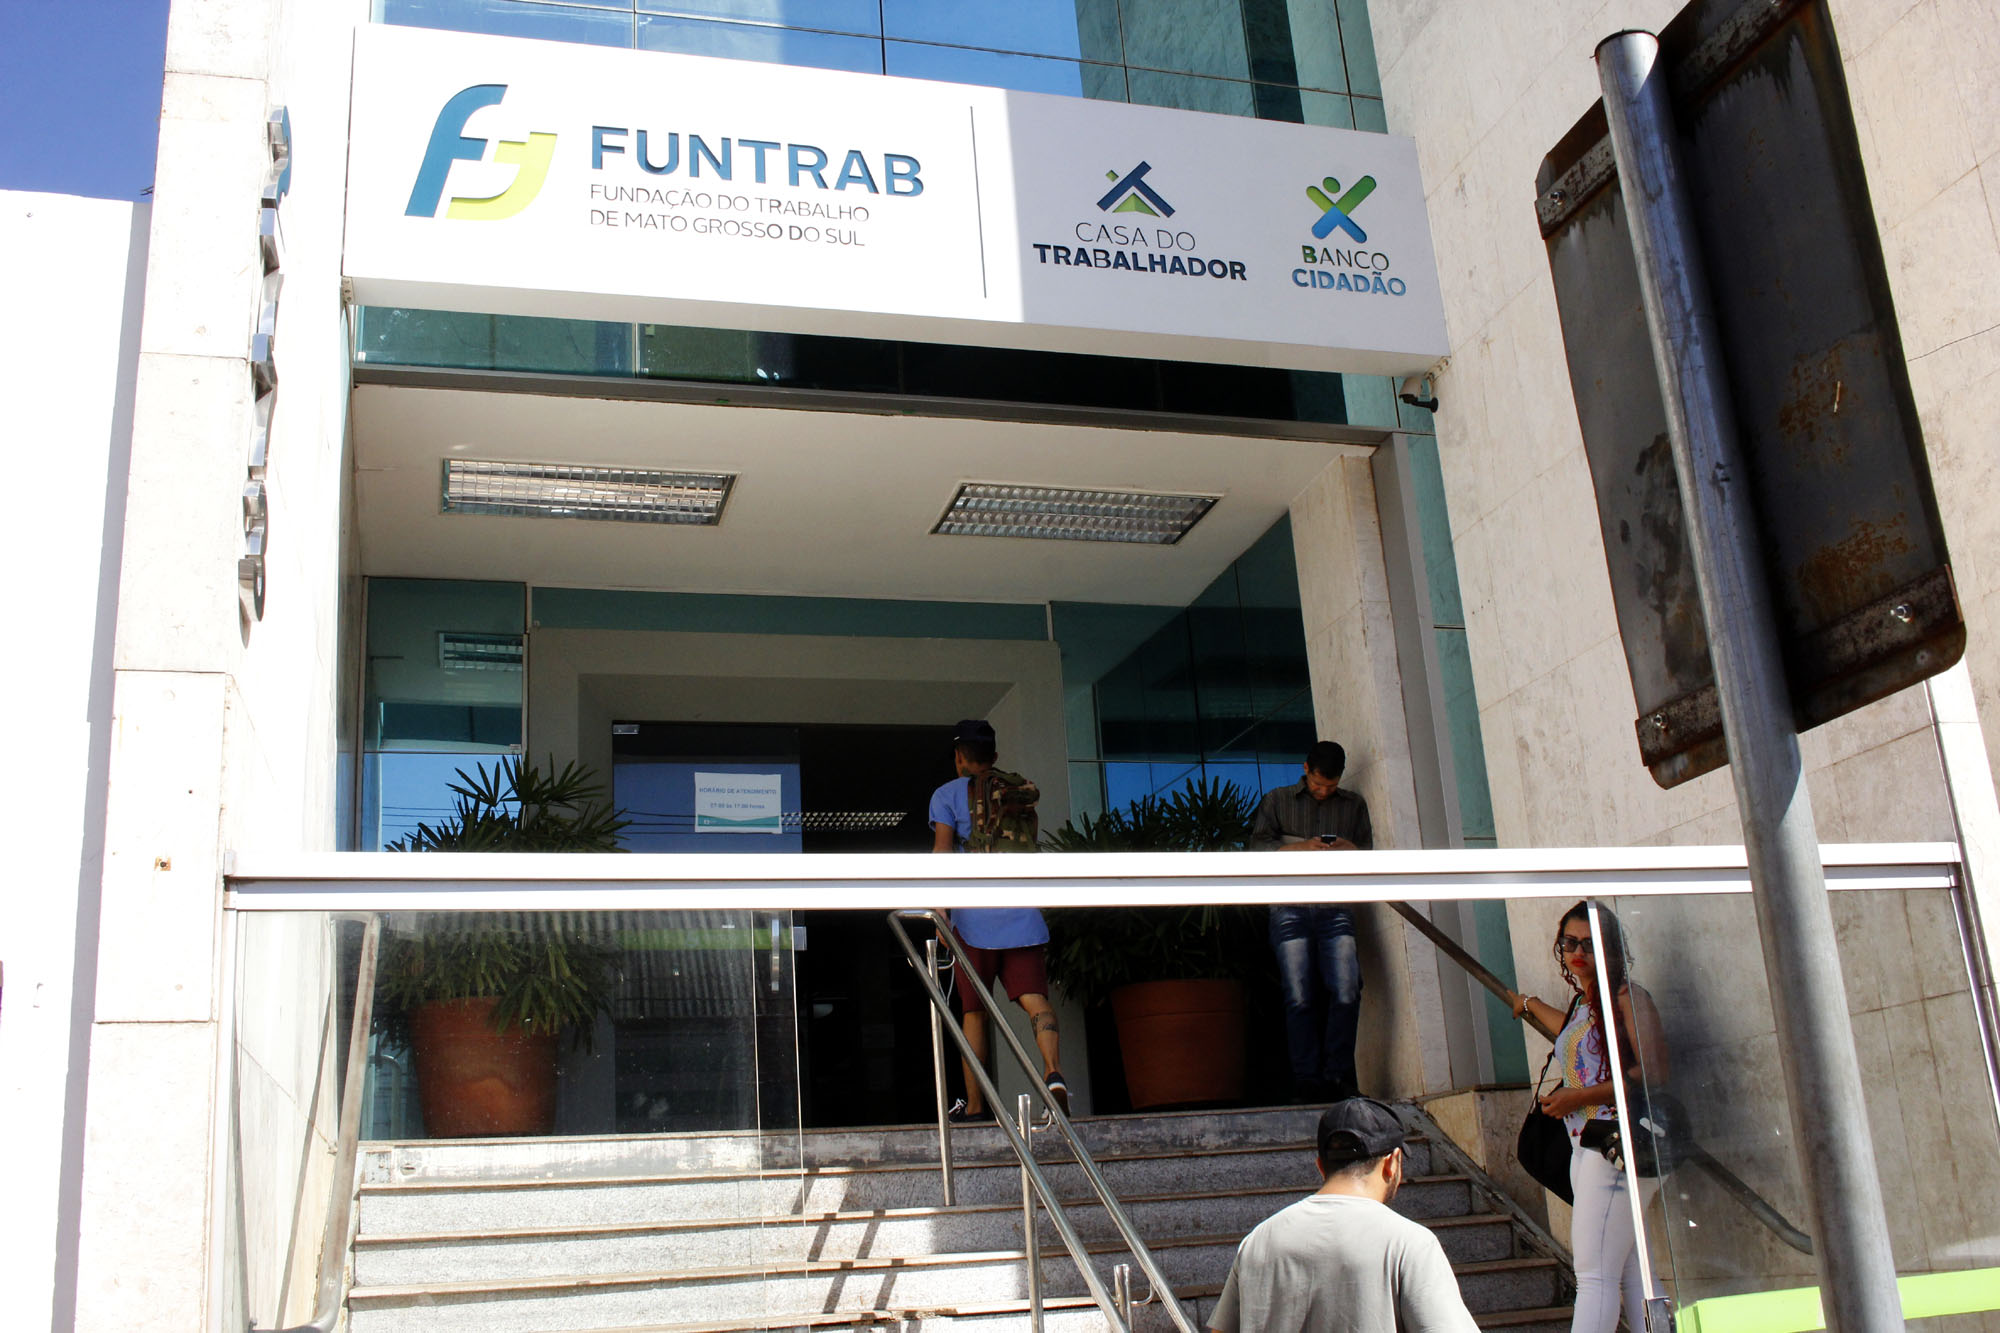 Funtrab destaca vagas para candidatos sem experiência e 20 vagas de vendedor interno para shopping